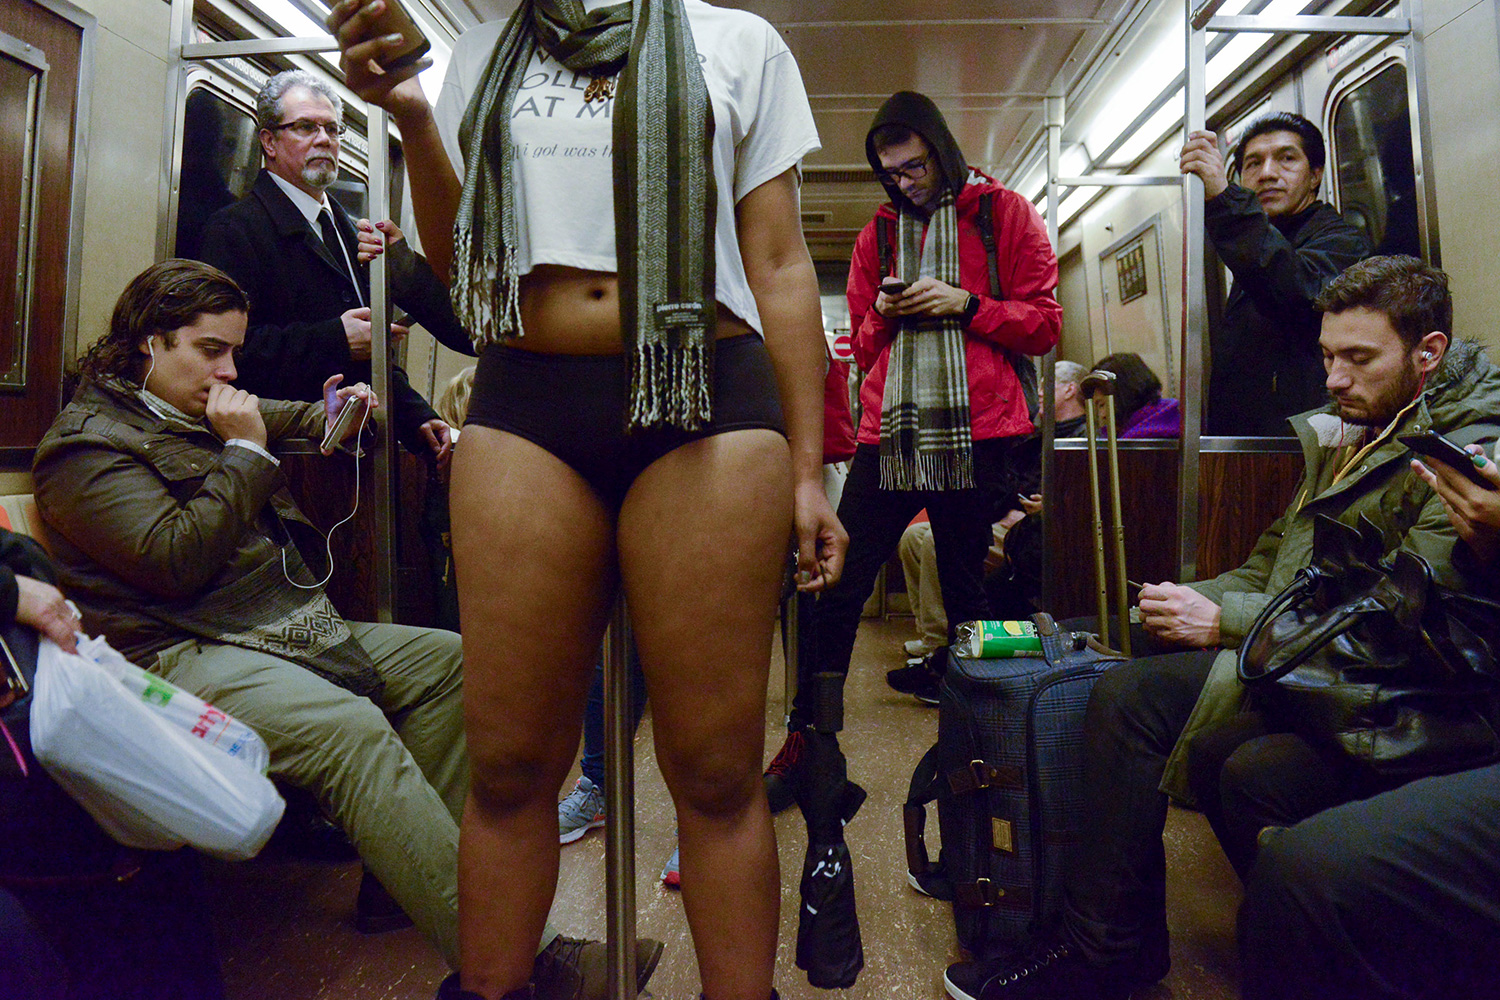 Las pasajeras del metro de Nueva York luchan contra delitos sexuales